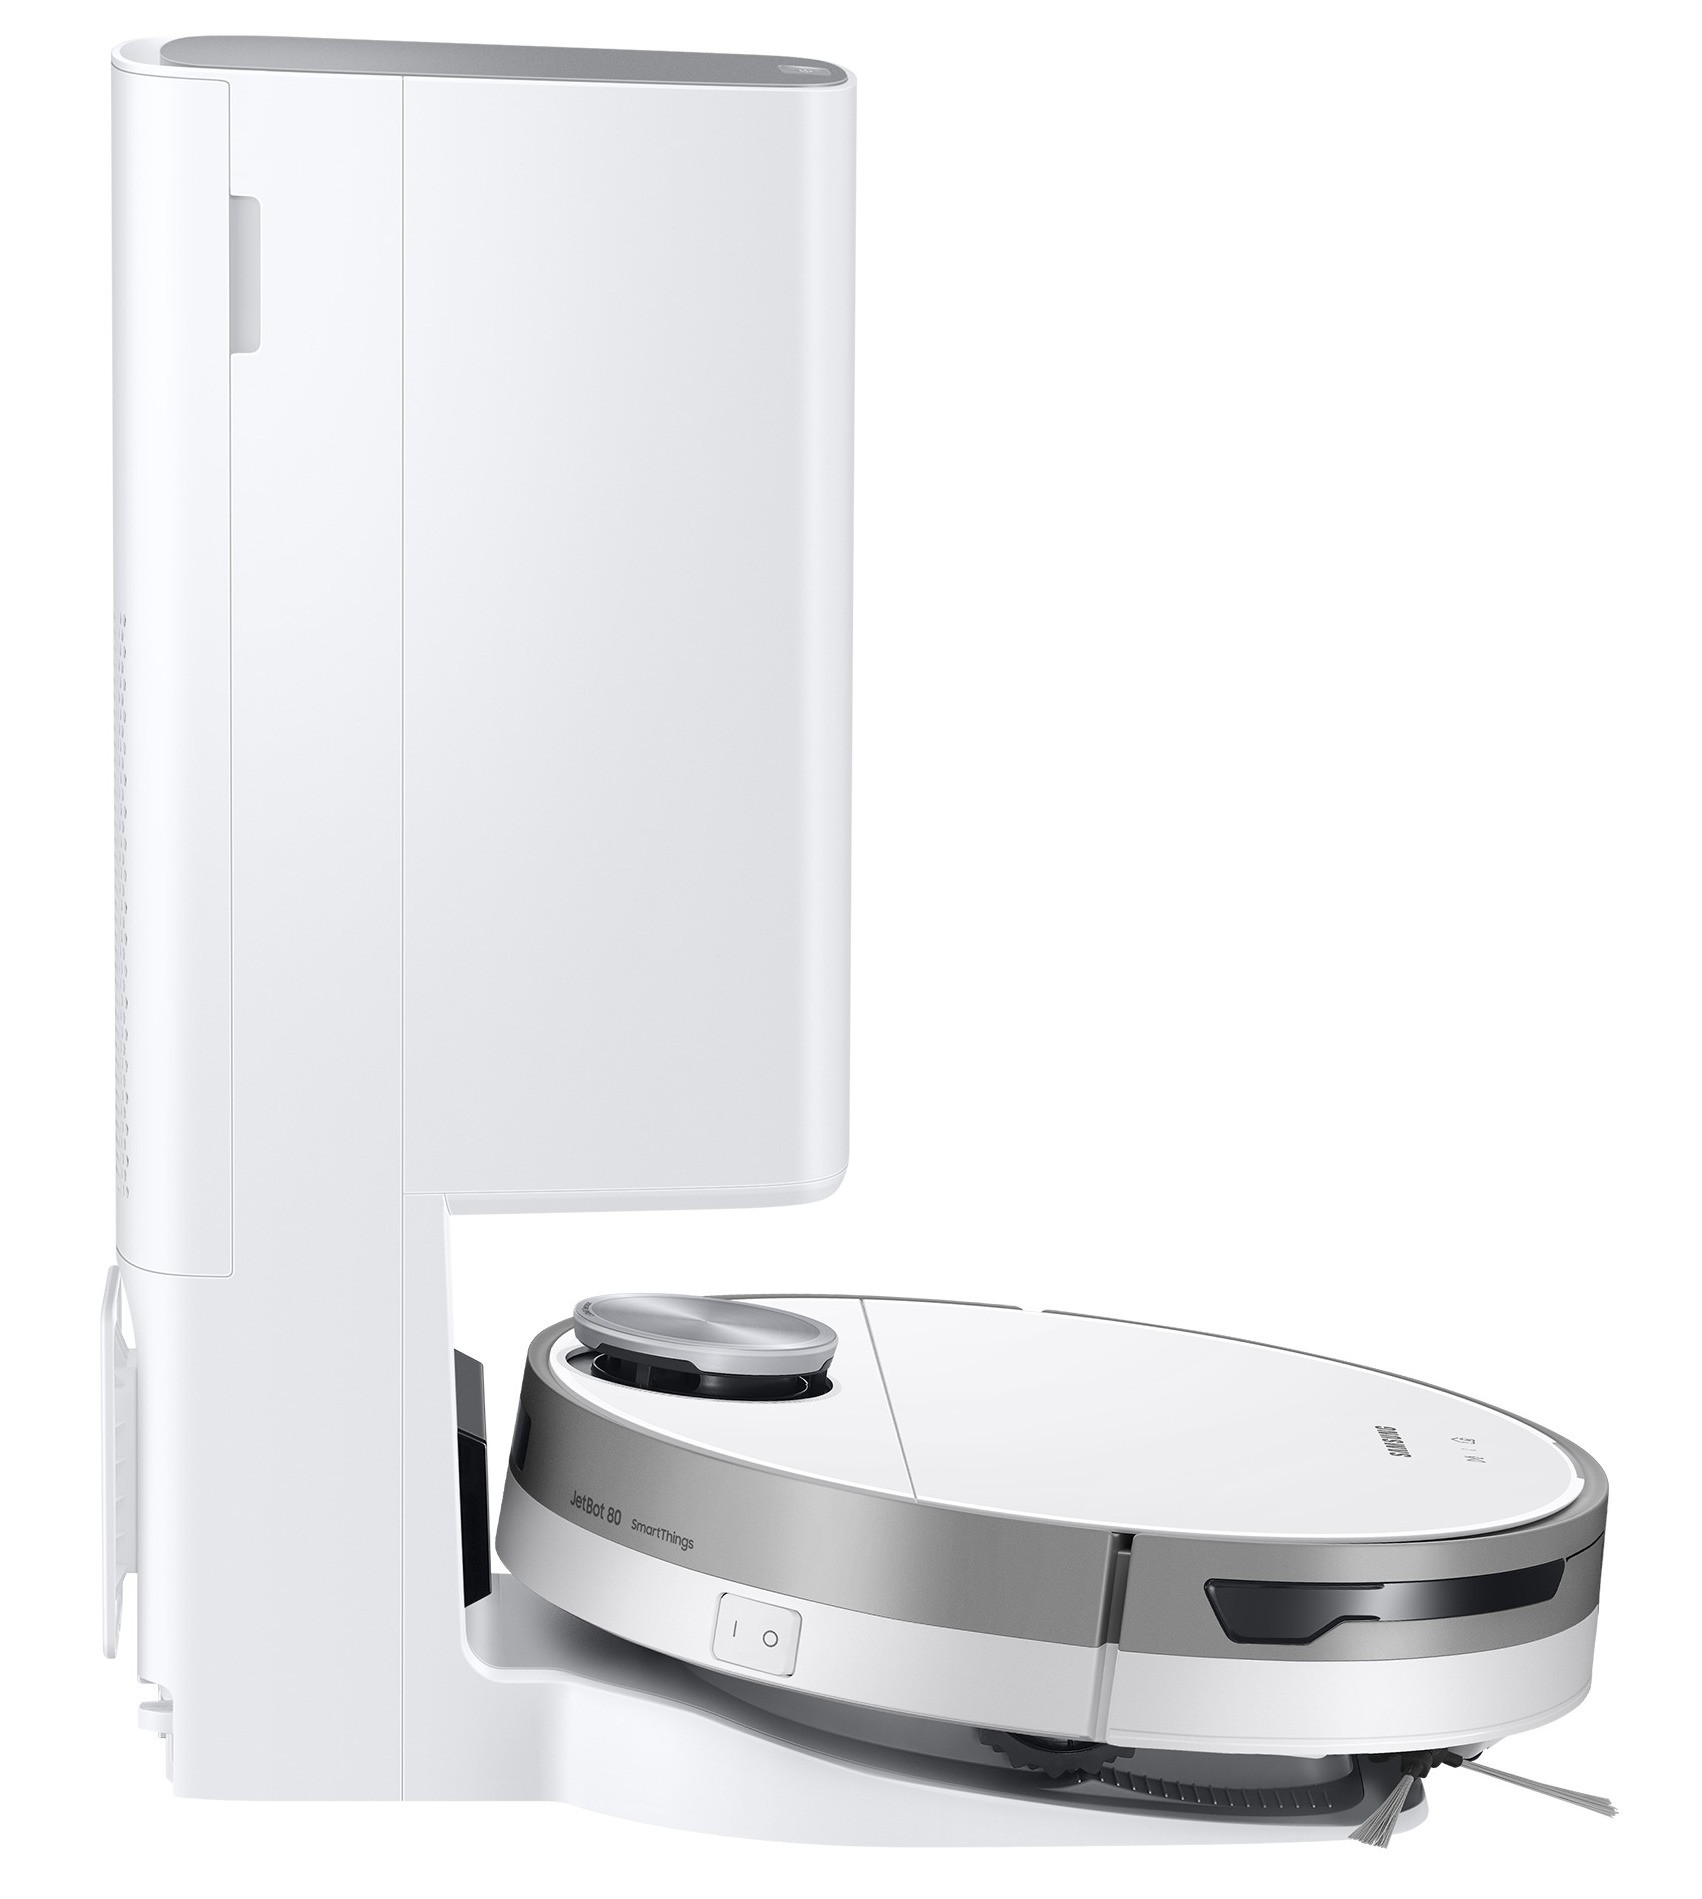 Робот-пылесос Samsung VR30T85513W/UK цена 17999.00 грн - фотография 2